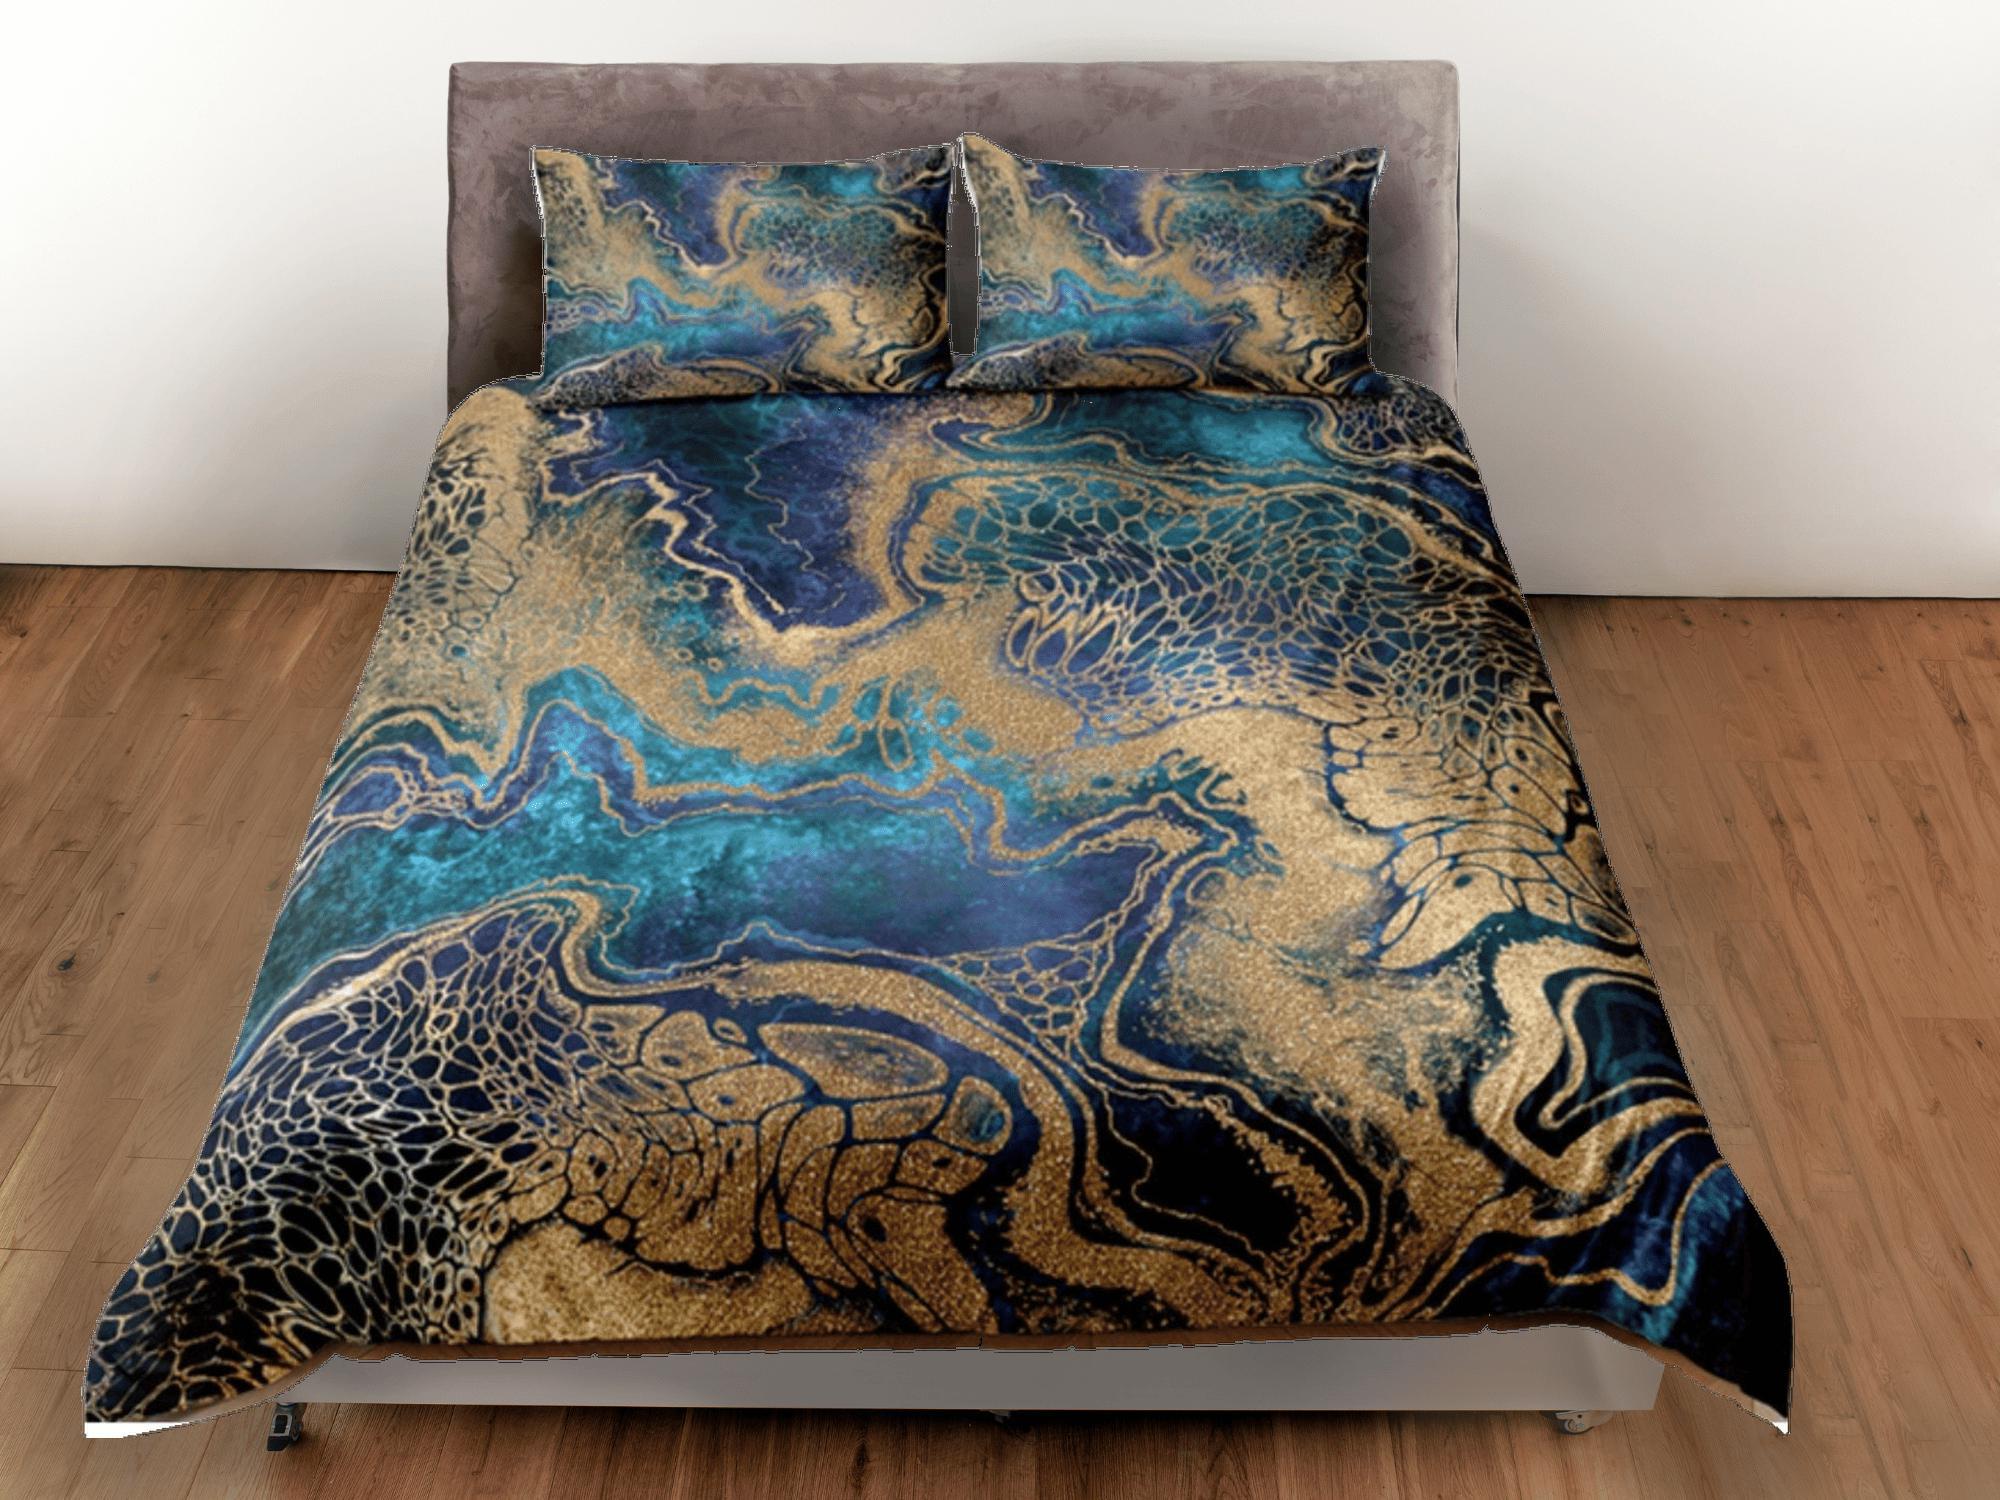 daintyduvet Gold Marble Swirl Blue Duvet Cover Set Colorful Bedspread, Dorm Bedding & Pillowcase, King Duvet Cover Full, Comforter Queen